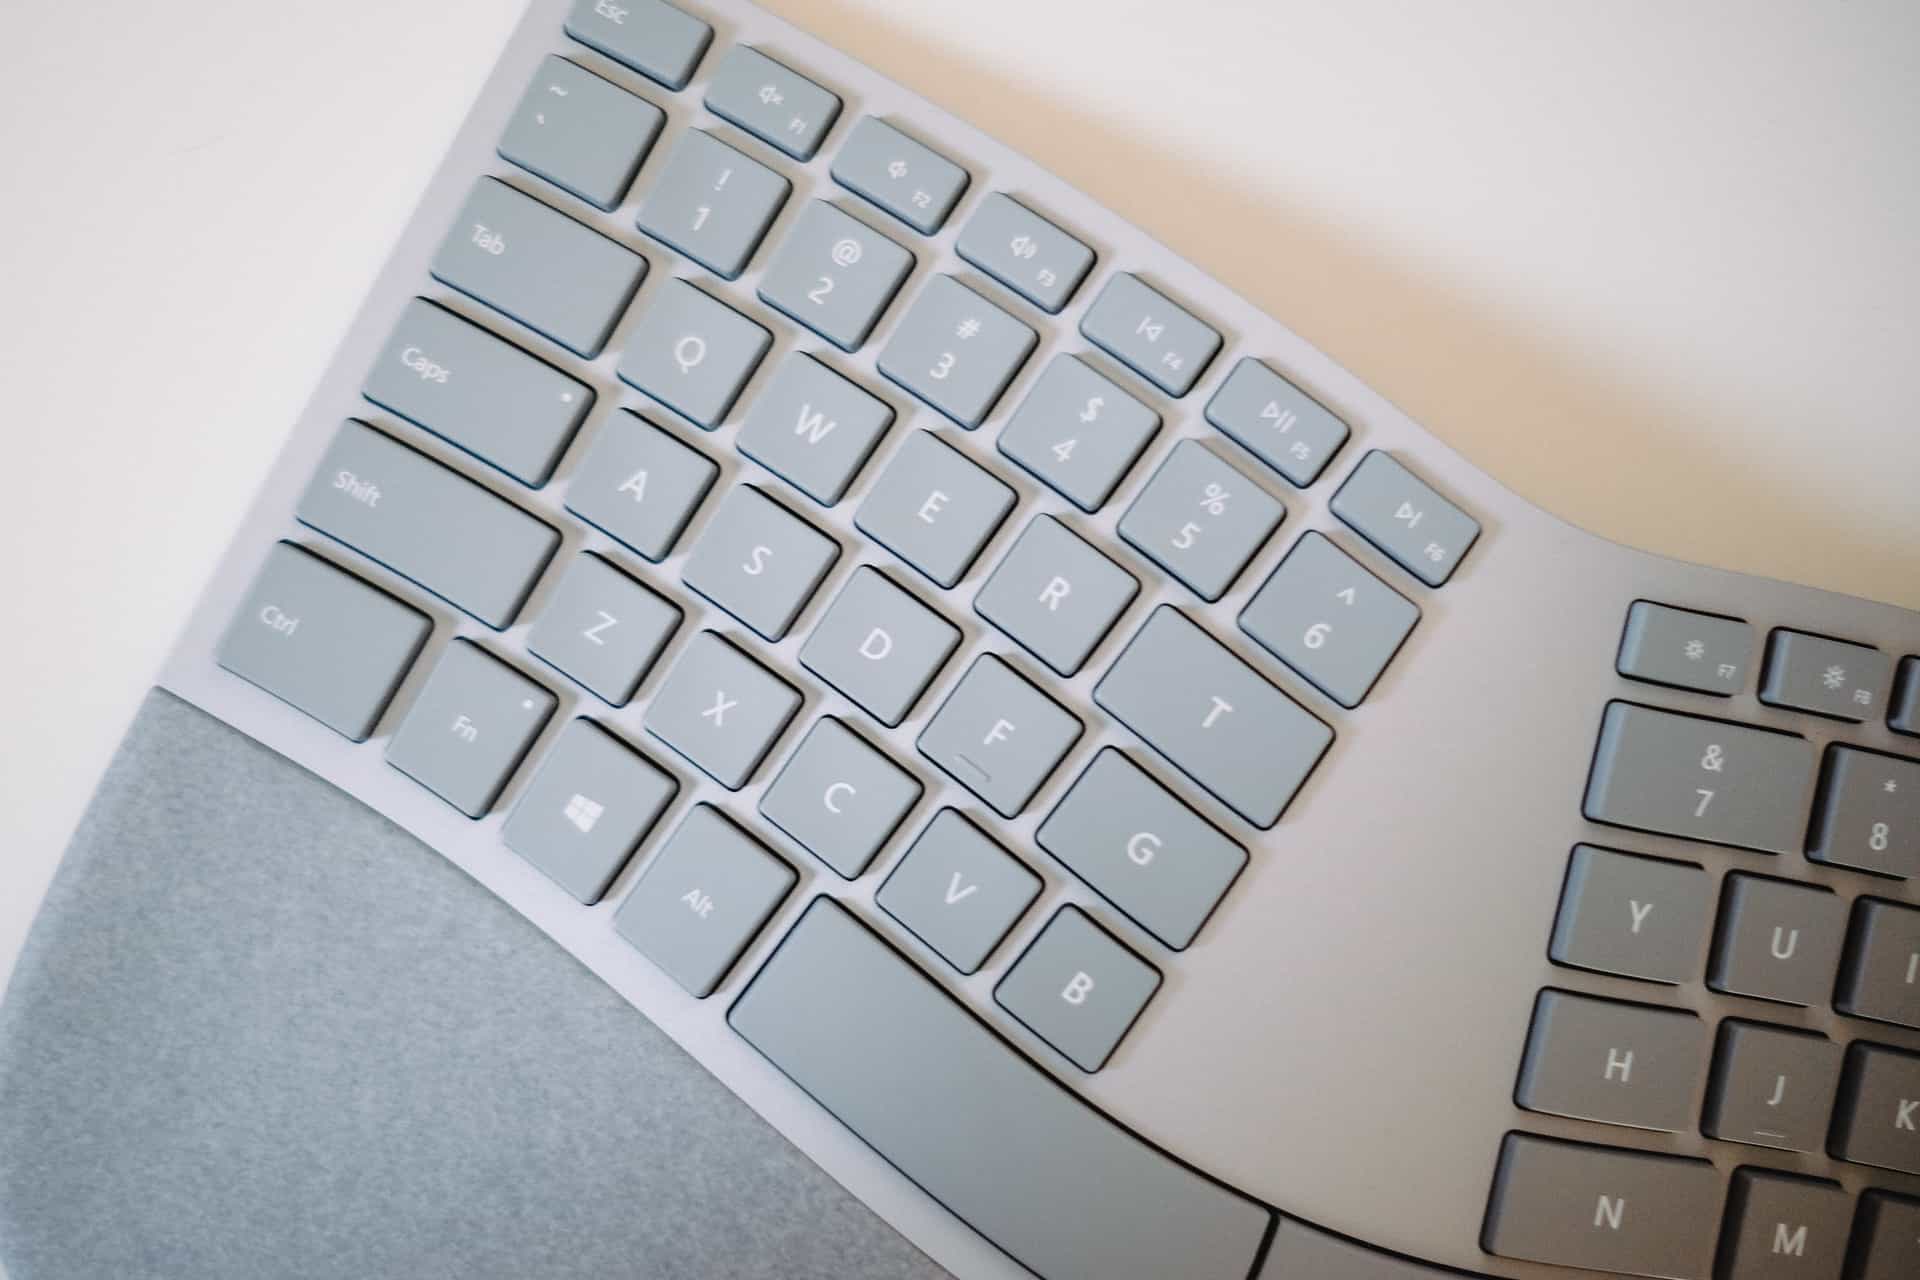 ergonomic keyboard for mac laptop